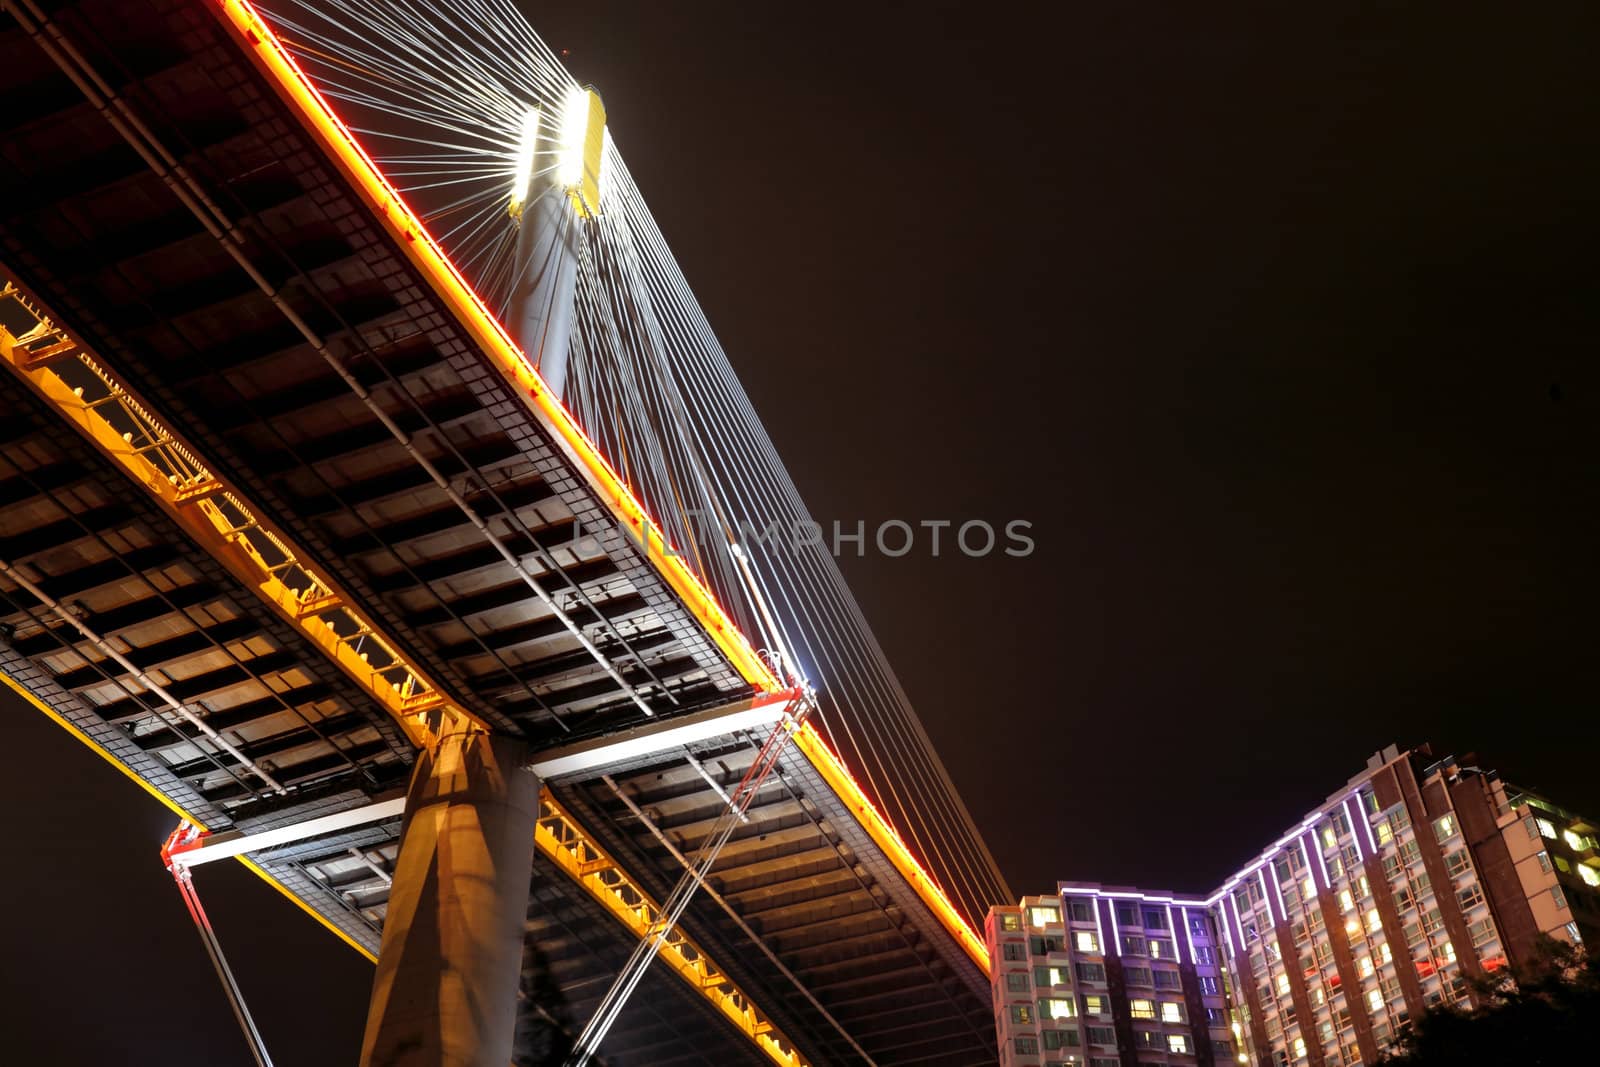 Ting Kau Bridge at night, Hong Kong by leungchopan